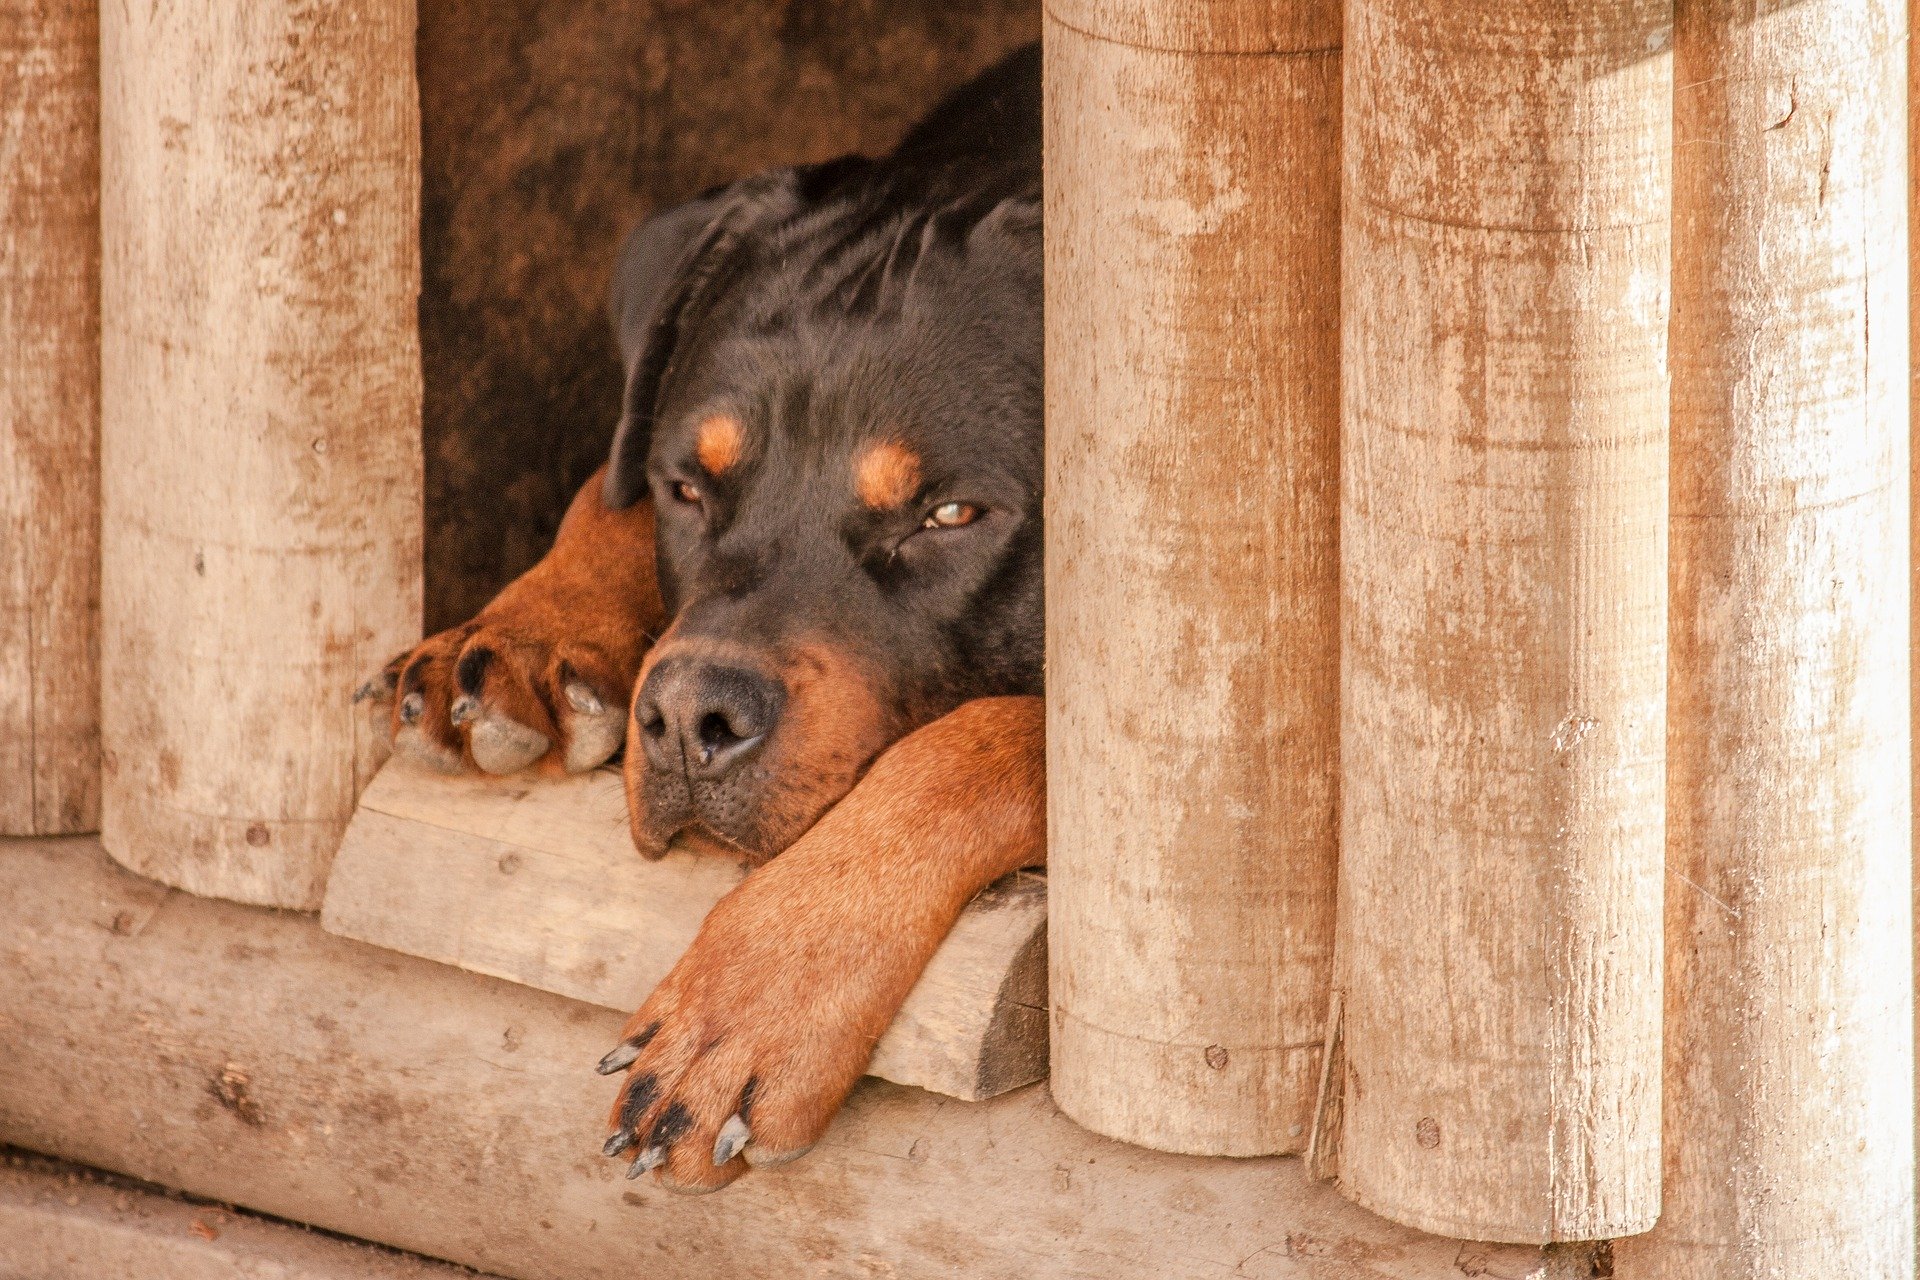 При строительстве конуры следует учитывать потребности собаки. Она должна быть удобной, теплой и уютной.